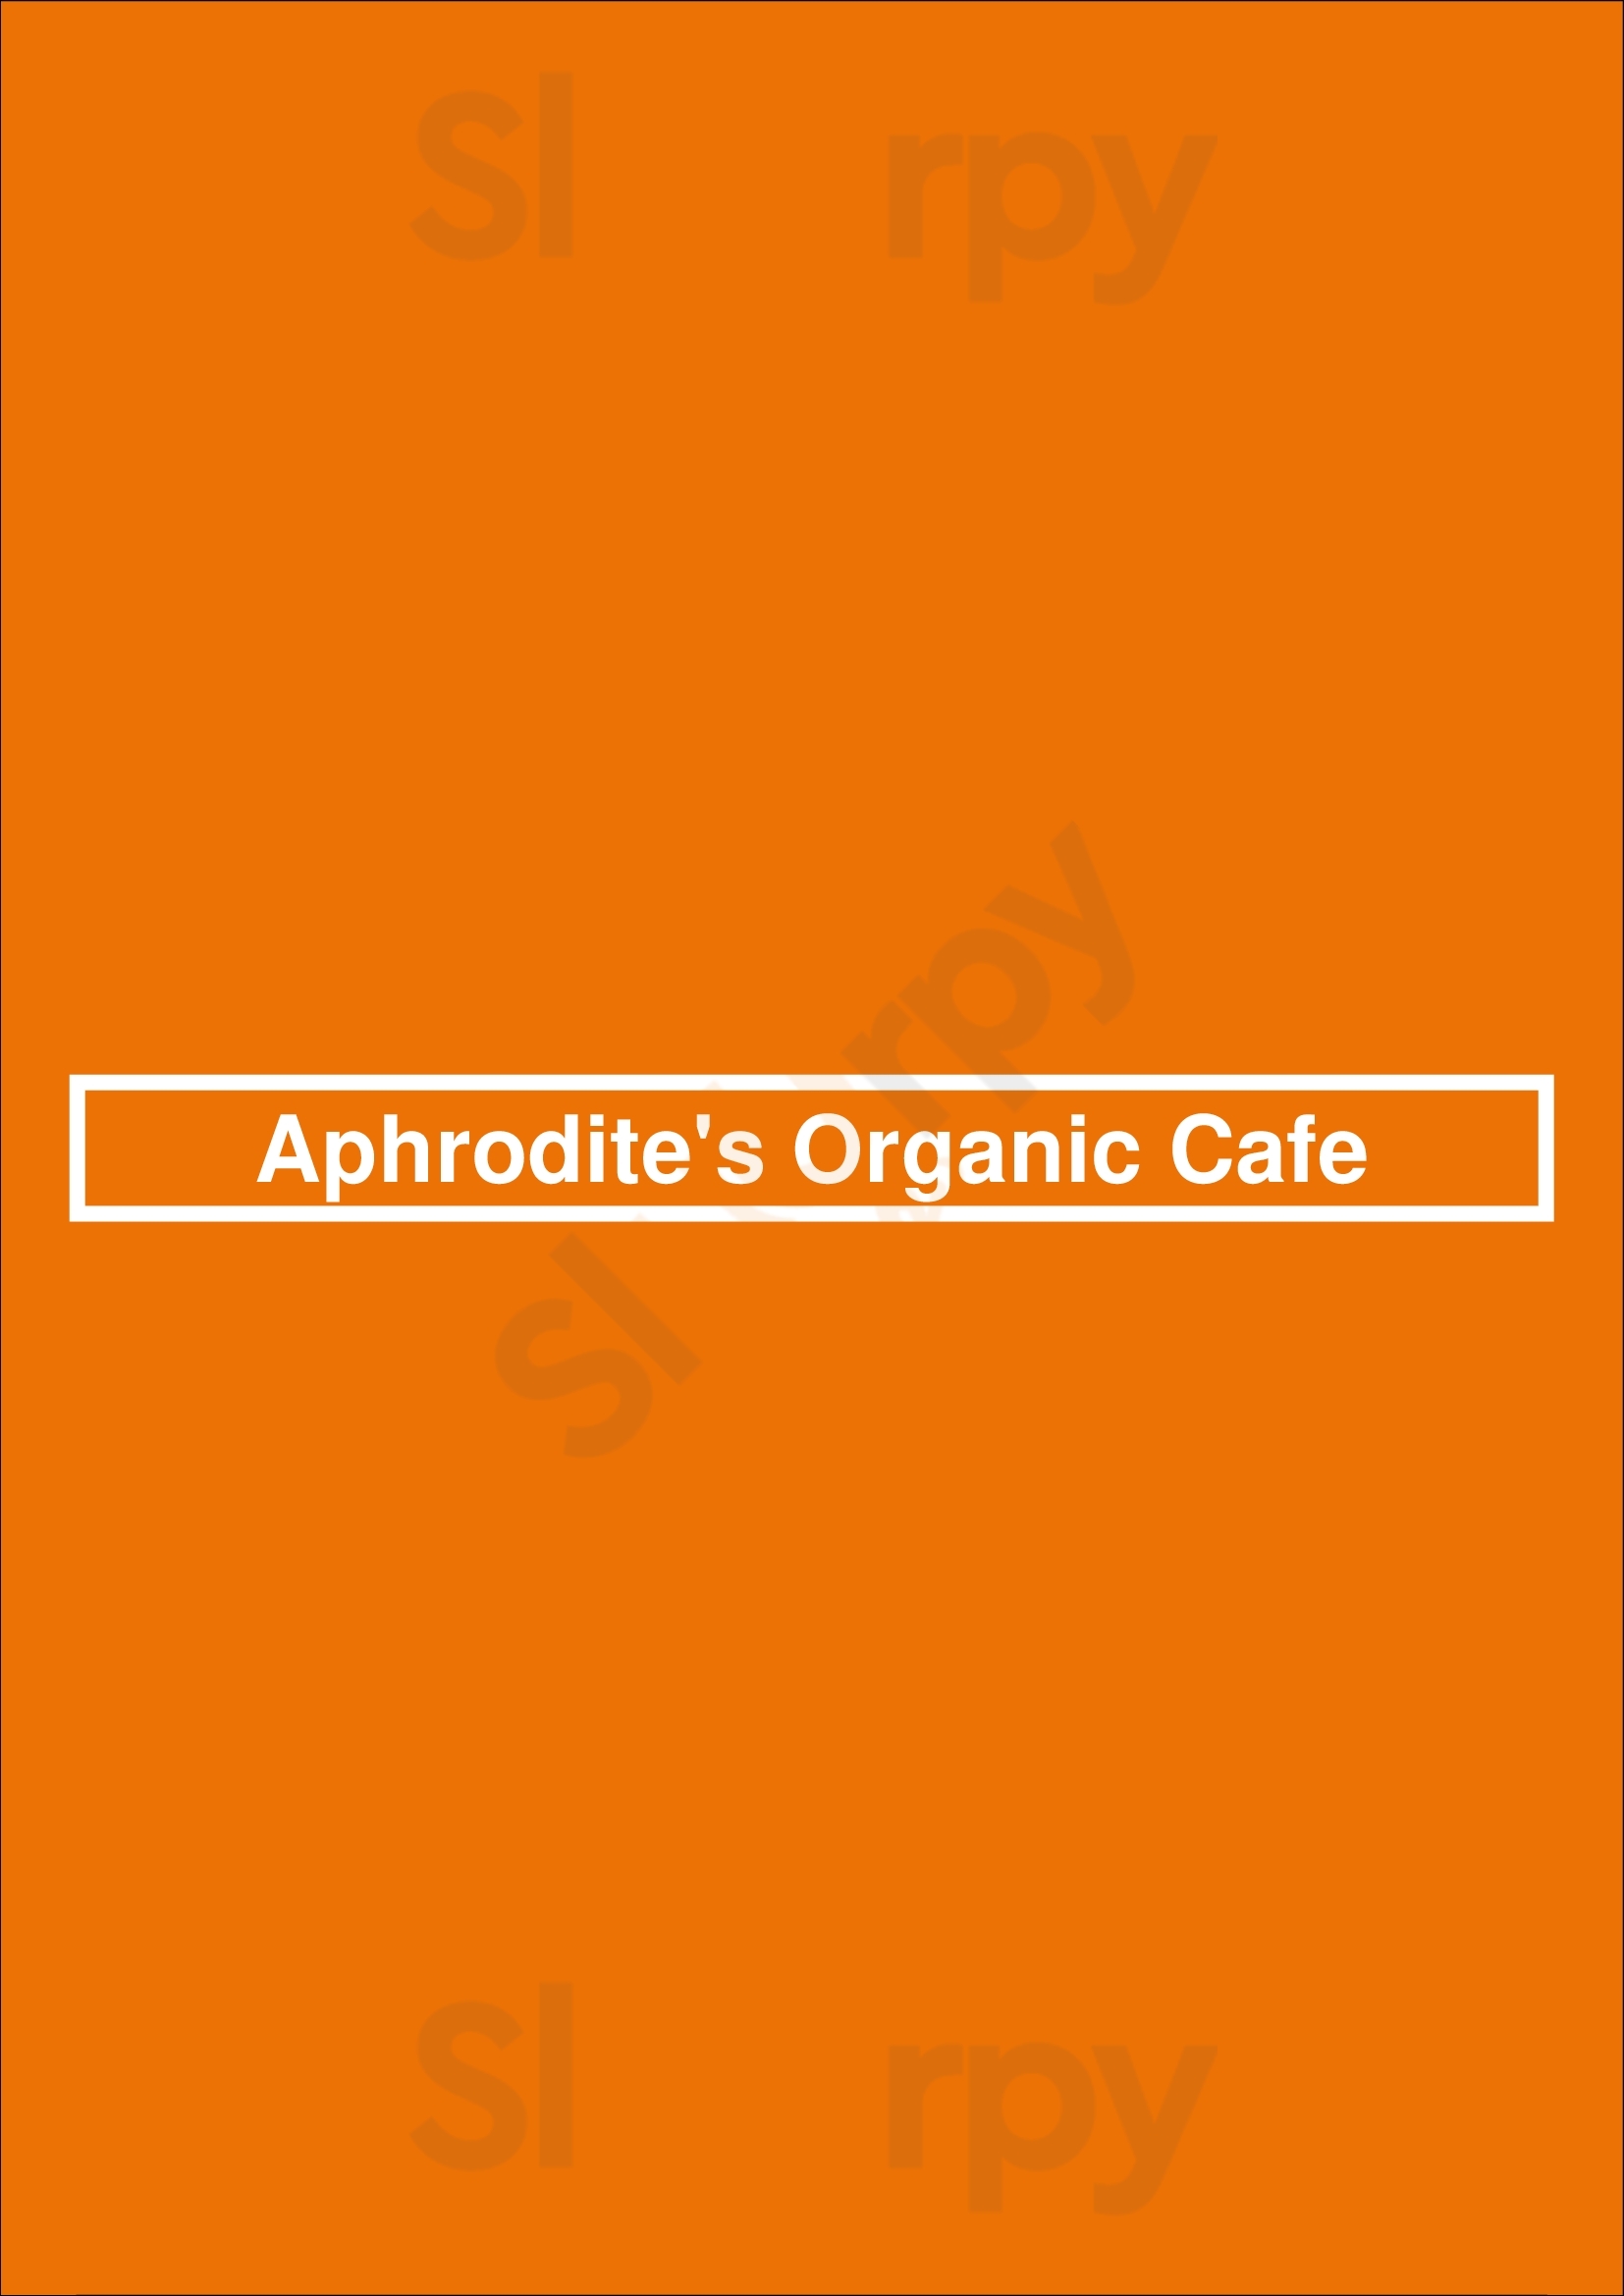 Aphrodite's Organic Cafe Vancouver Menu - 1